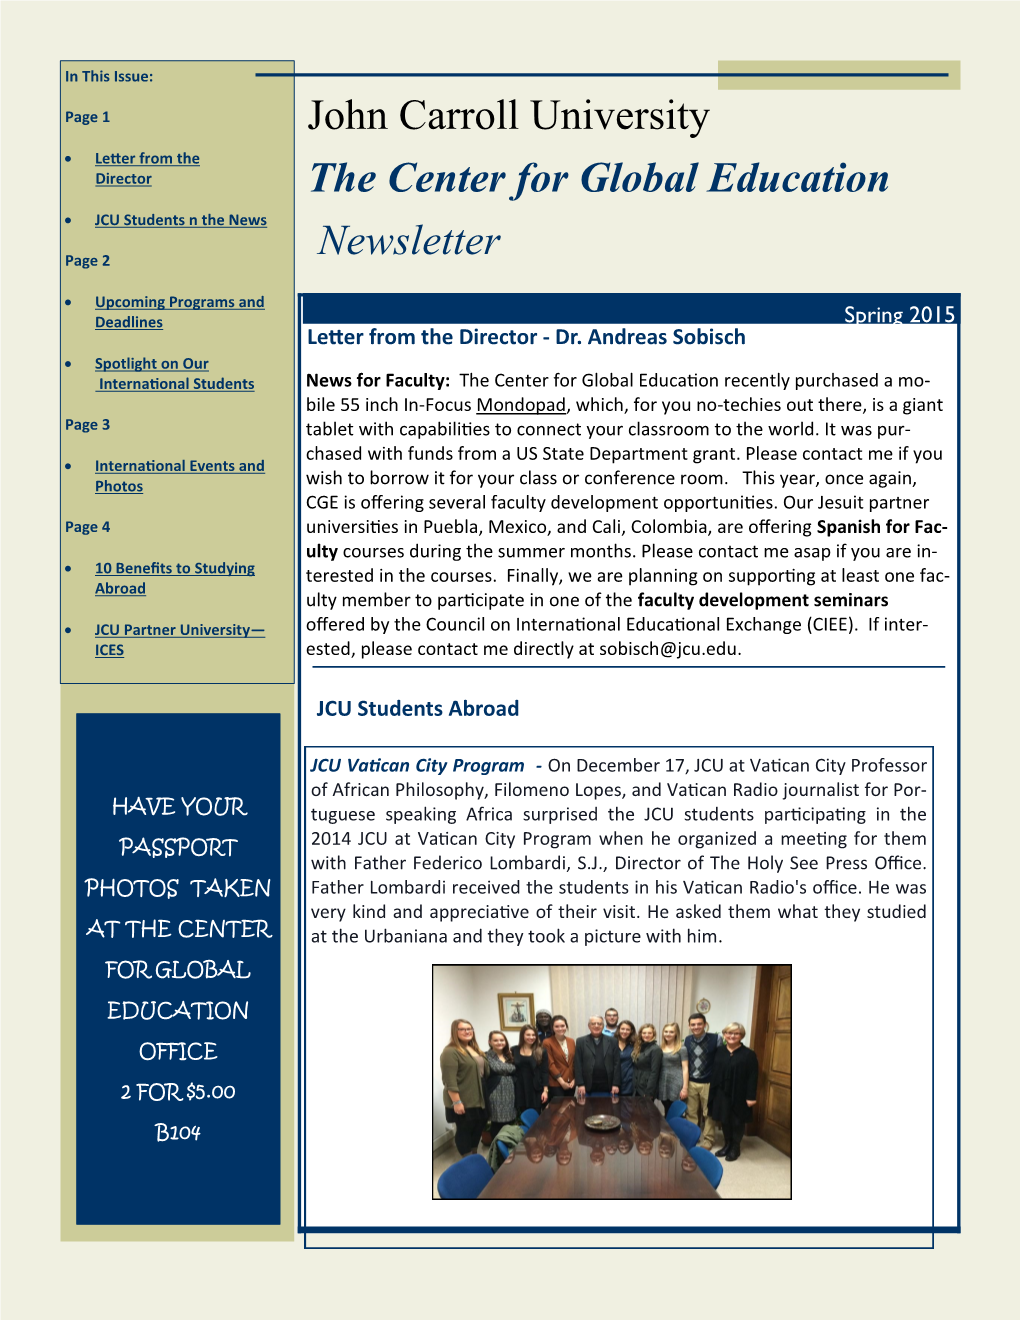 John Carroll University the Center for Global Education Newsletter